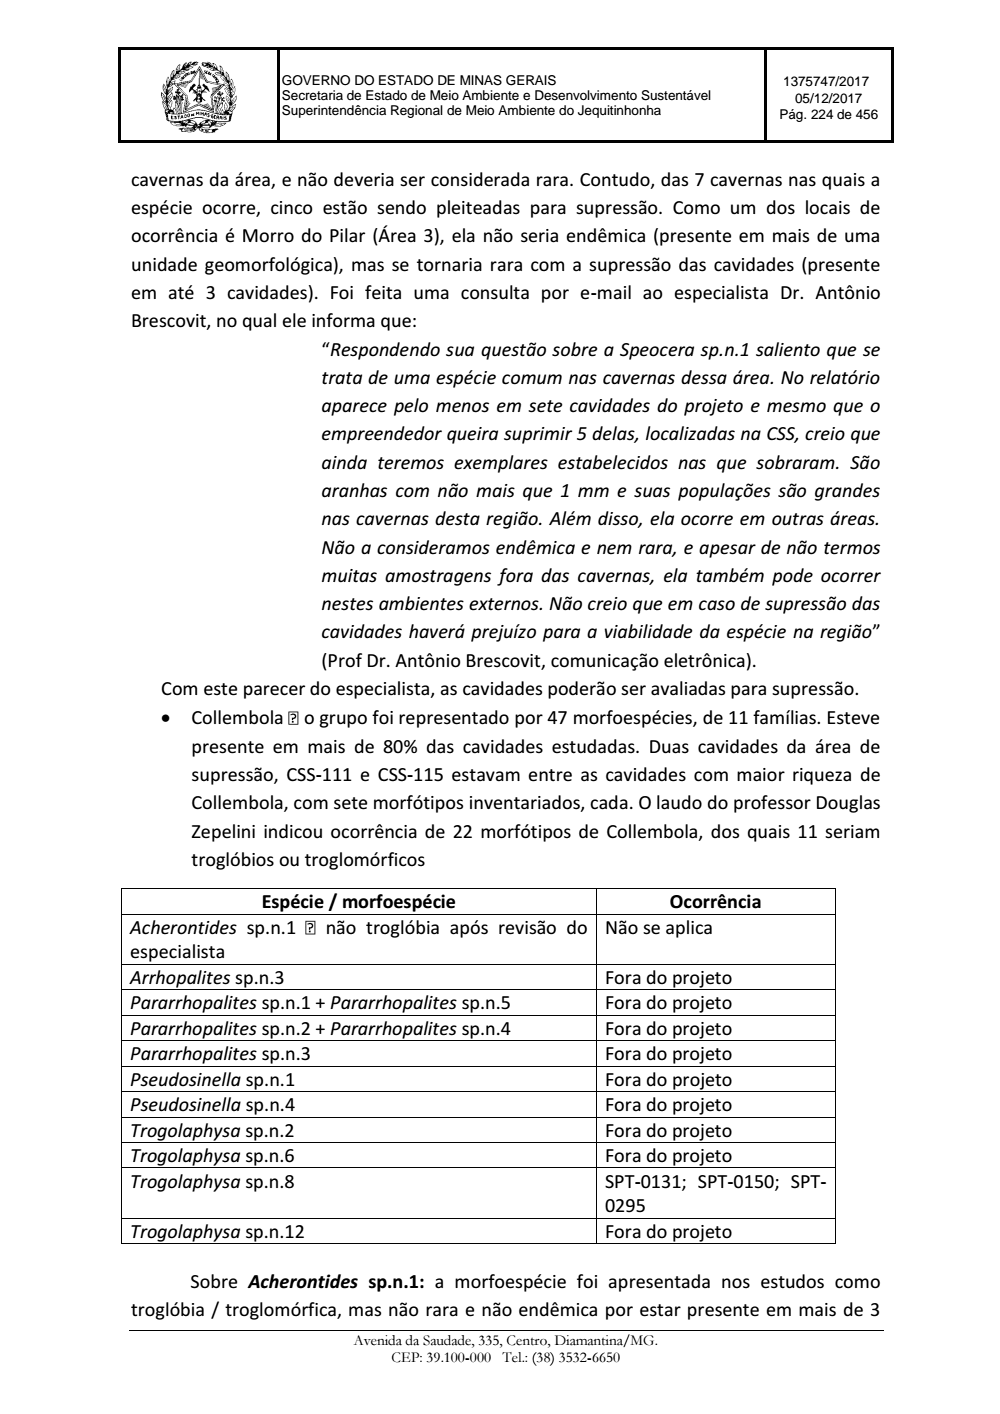 Page 224 from Parecer único da Secretaria de estado de Meio Ambiente e Desenvolvimento Sustentável (SEMAD)